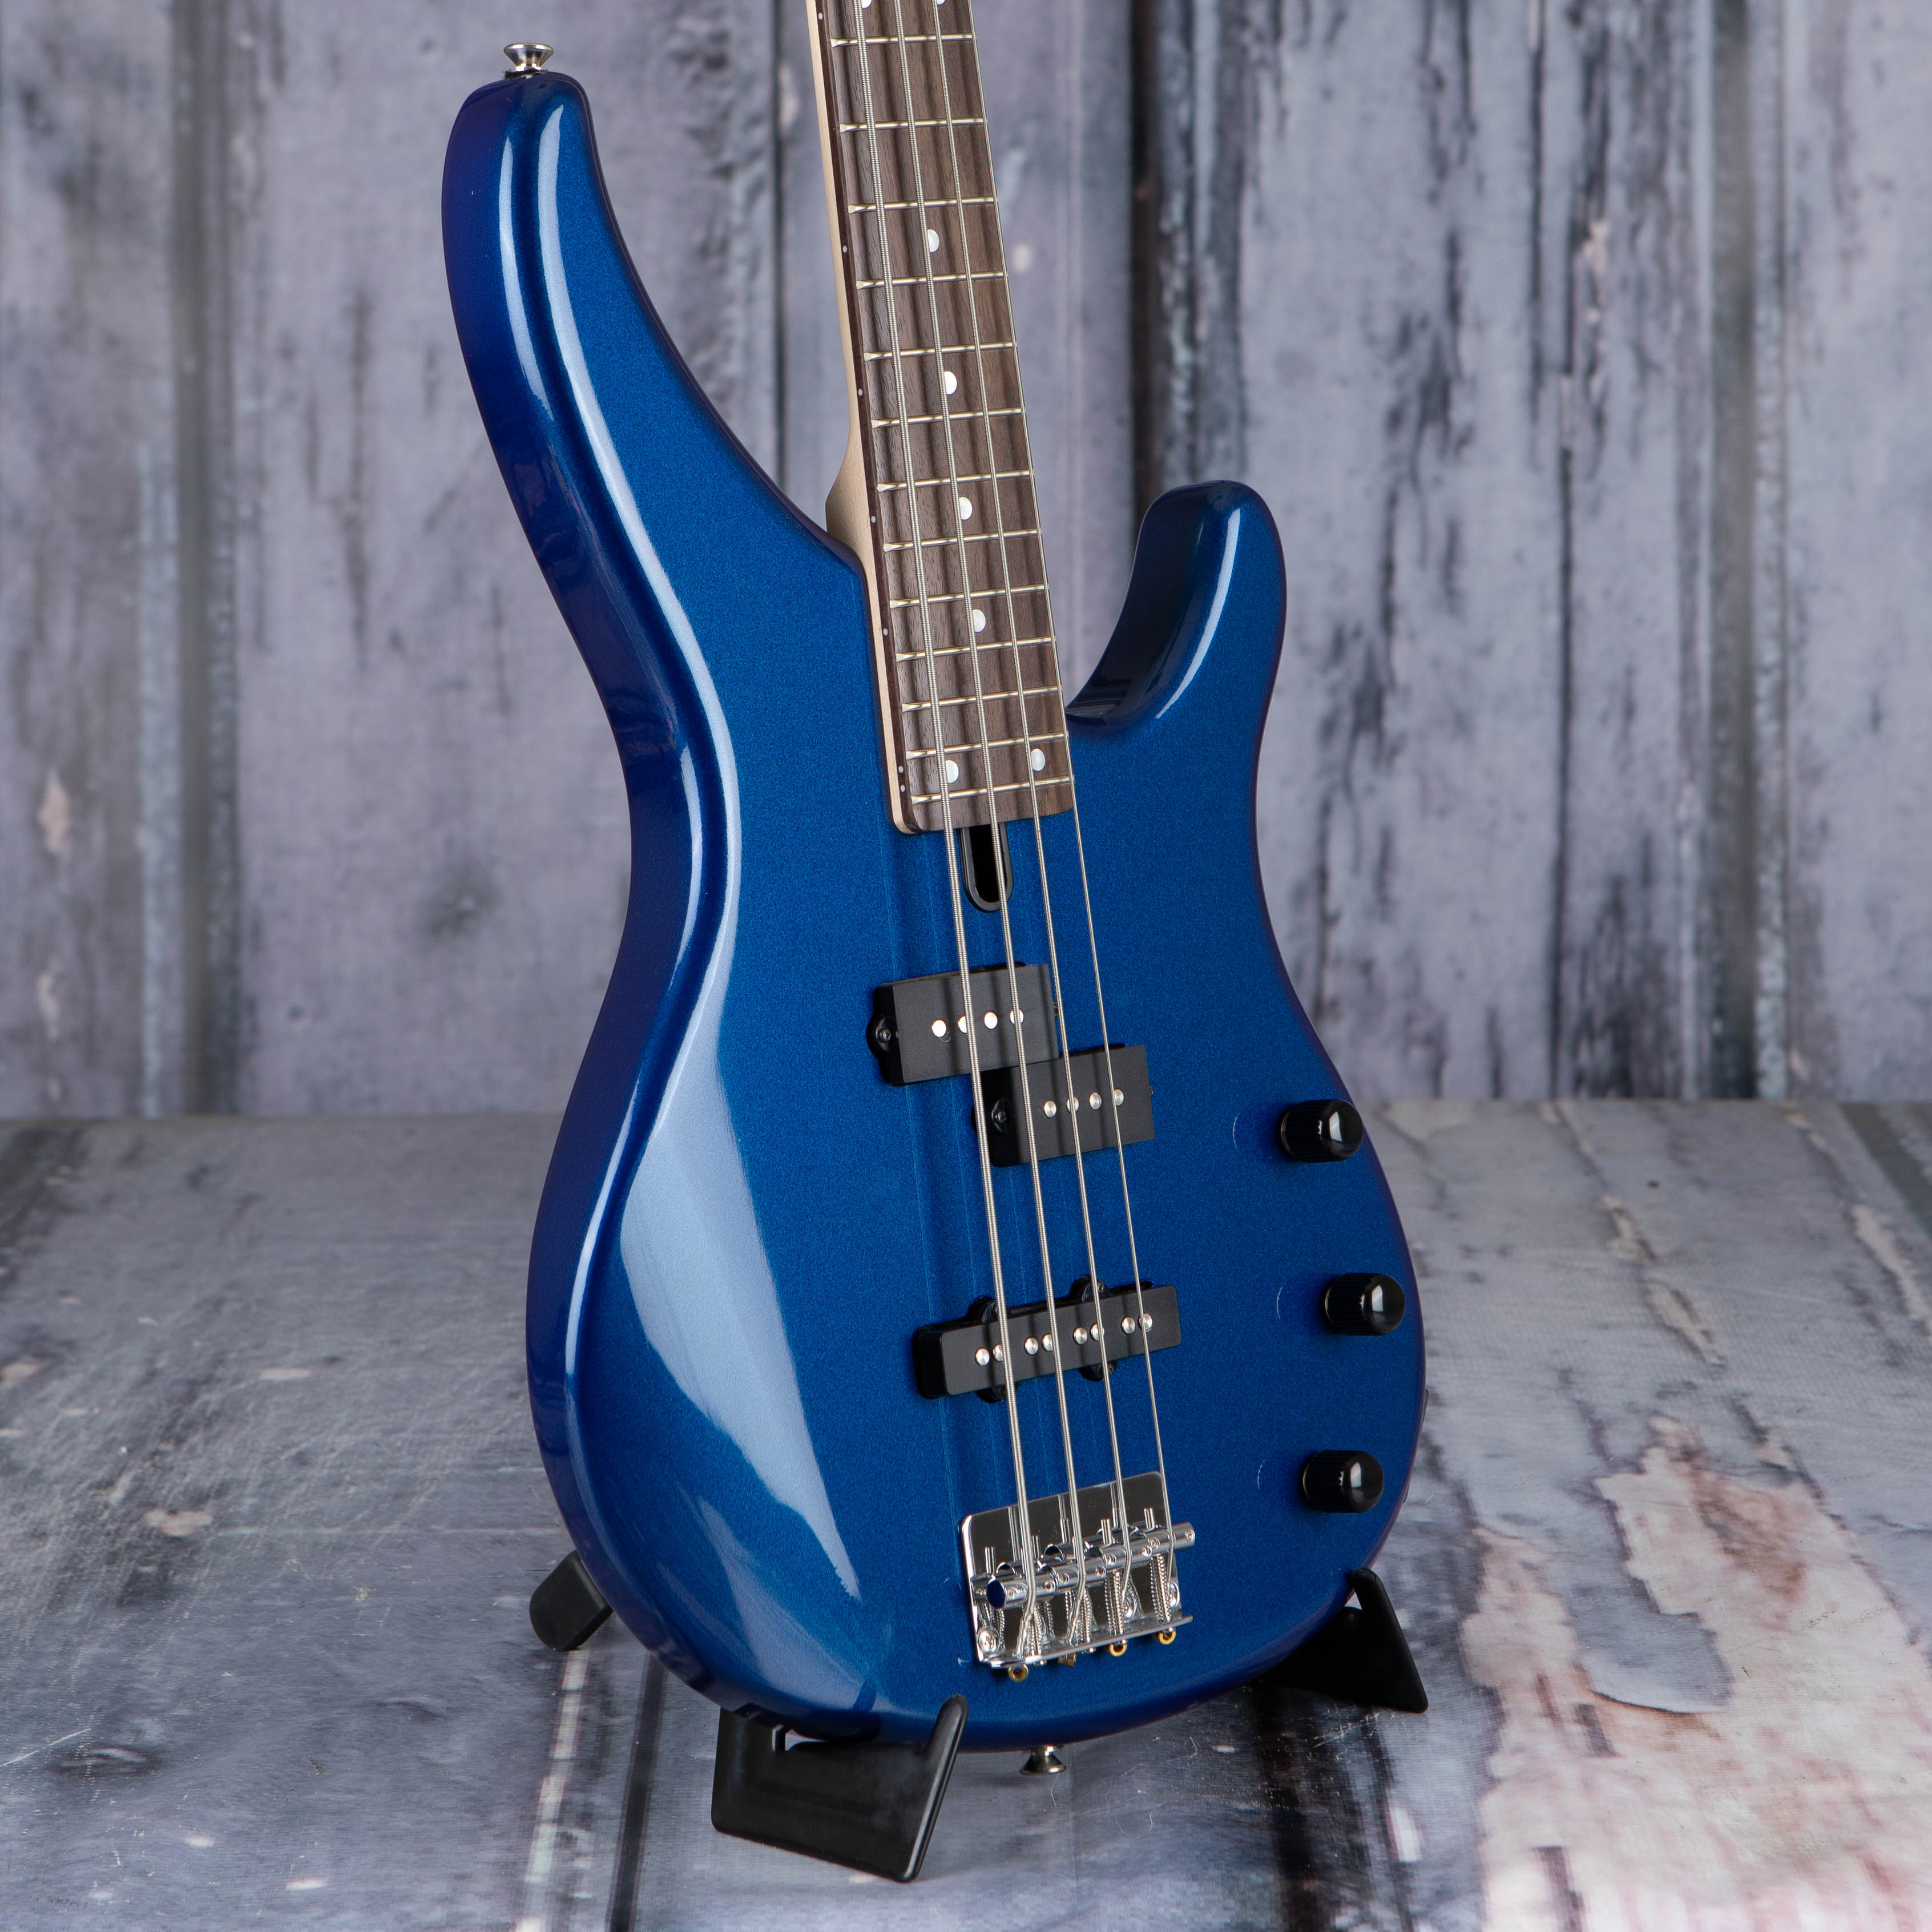 Yamaha TRBX174 Electric Bass Guitar, Metallic Blue, angle